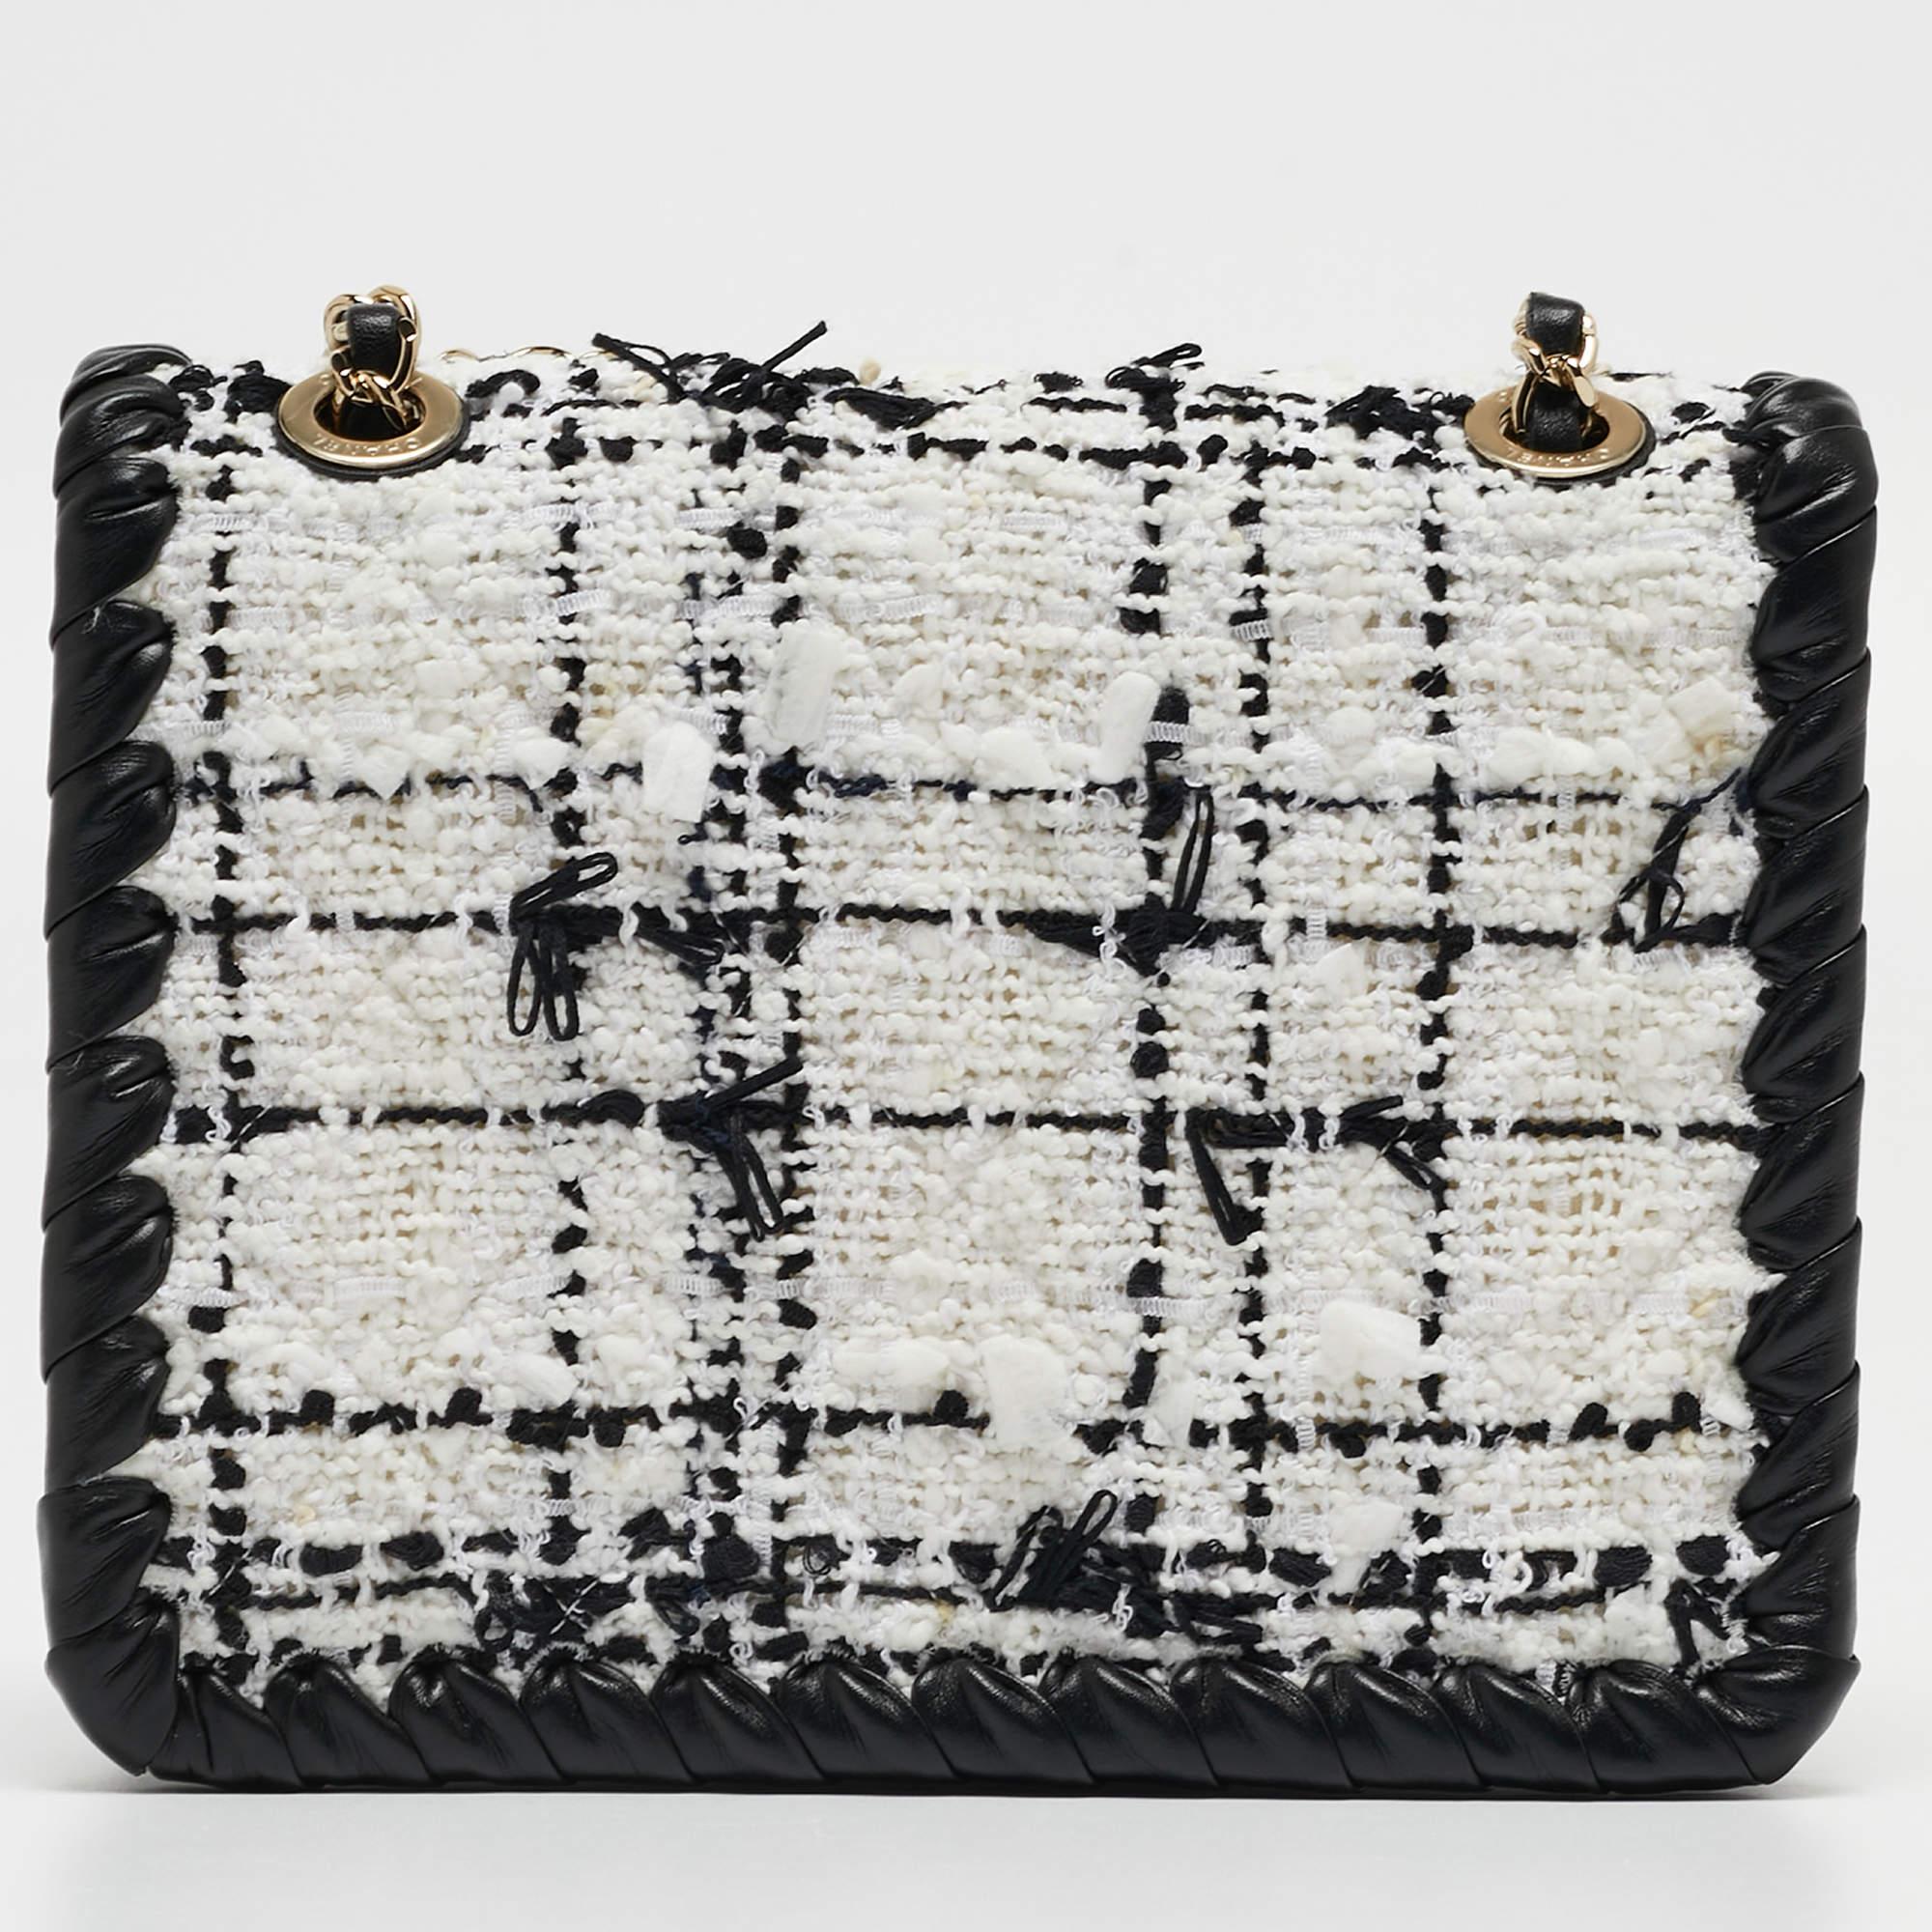 Le sac à rabat My Own Frame de Chanel est un chef-d'œuvre d'élégance présentant un mélange intemporel de tweed noir et blanc avec de luxueuses touches de cuir. Son format mini, sa structure encadrée et le design iconique de son rabat exhalent la